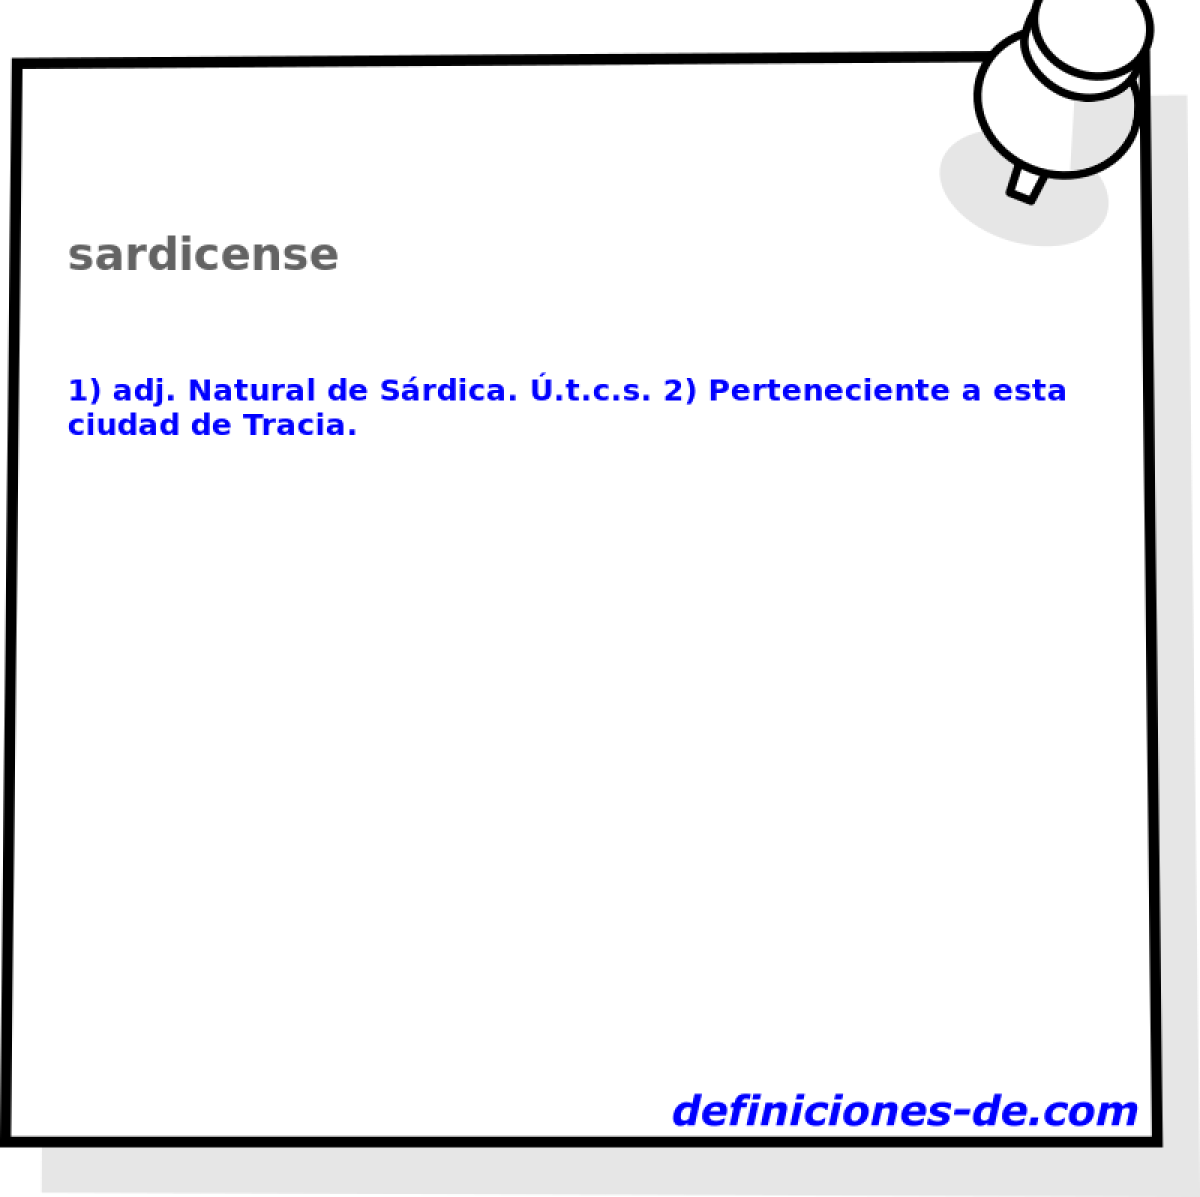 sardicense 